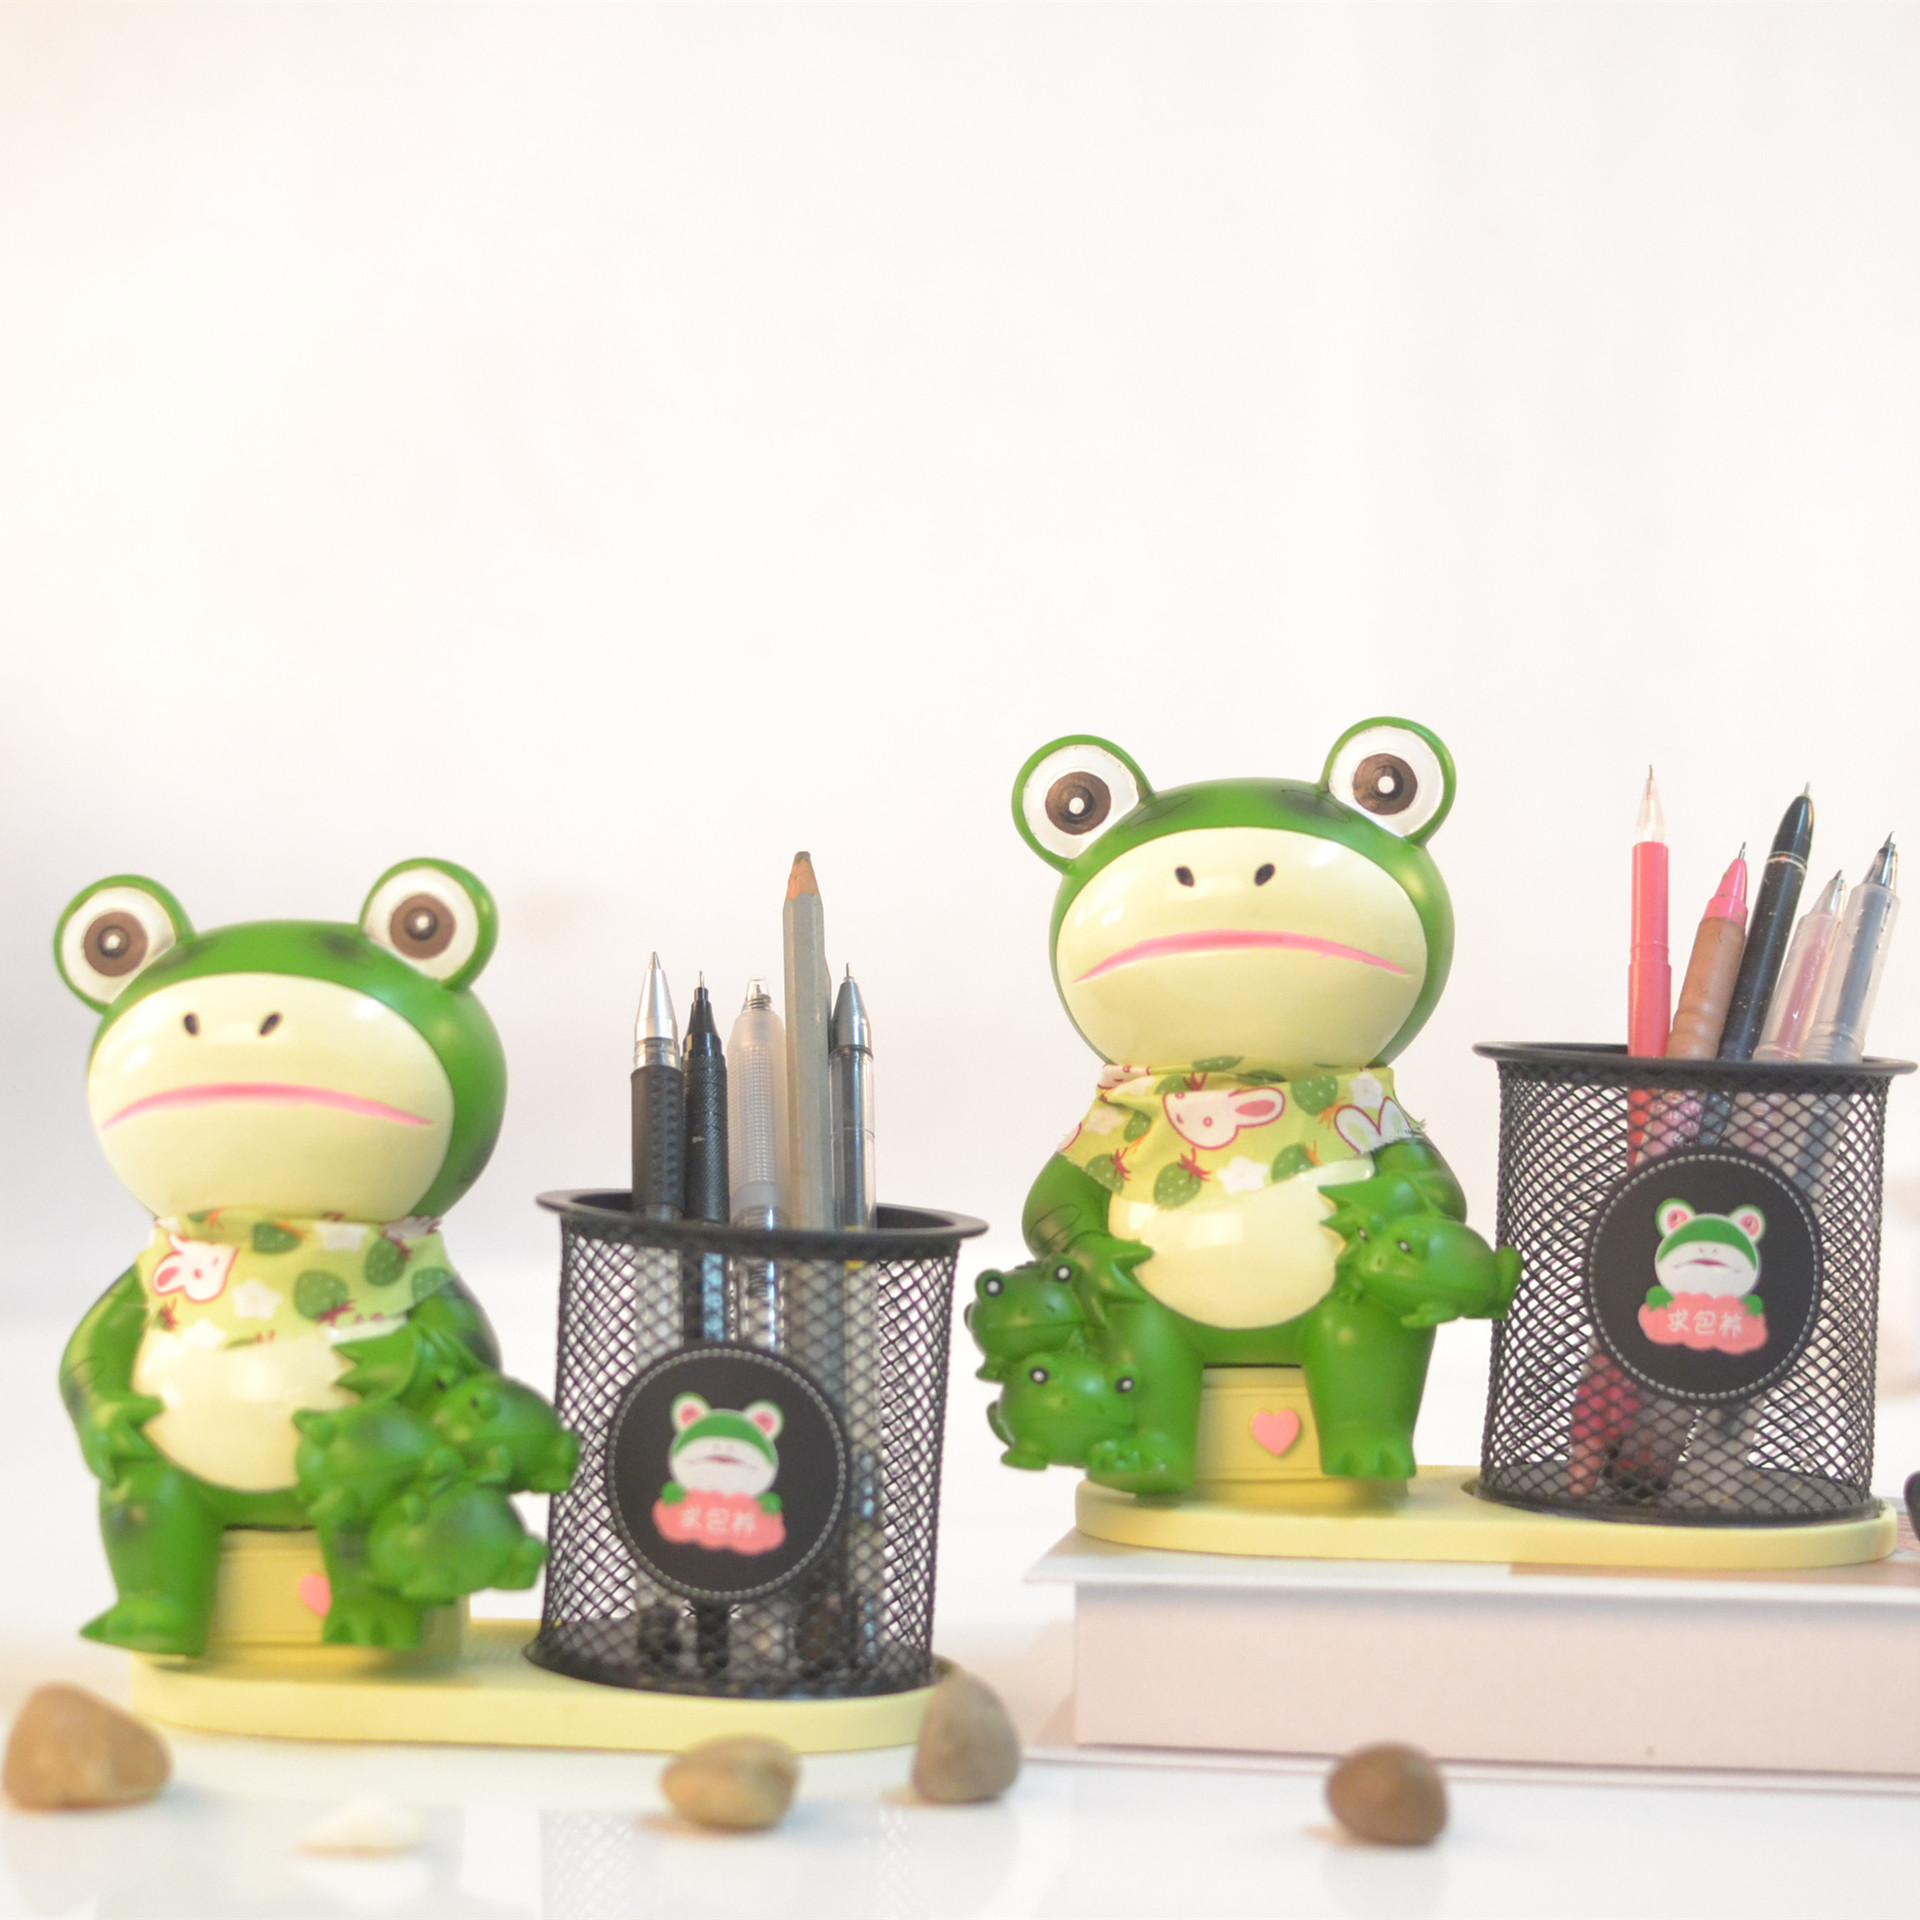 青蛙买仔树脂工艺摆件呆萌网红社会蛙笔筒学生礼品儿童节生日礼物